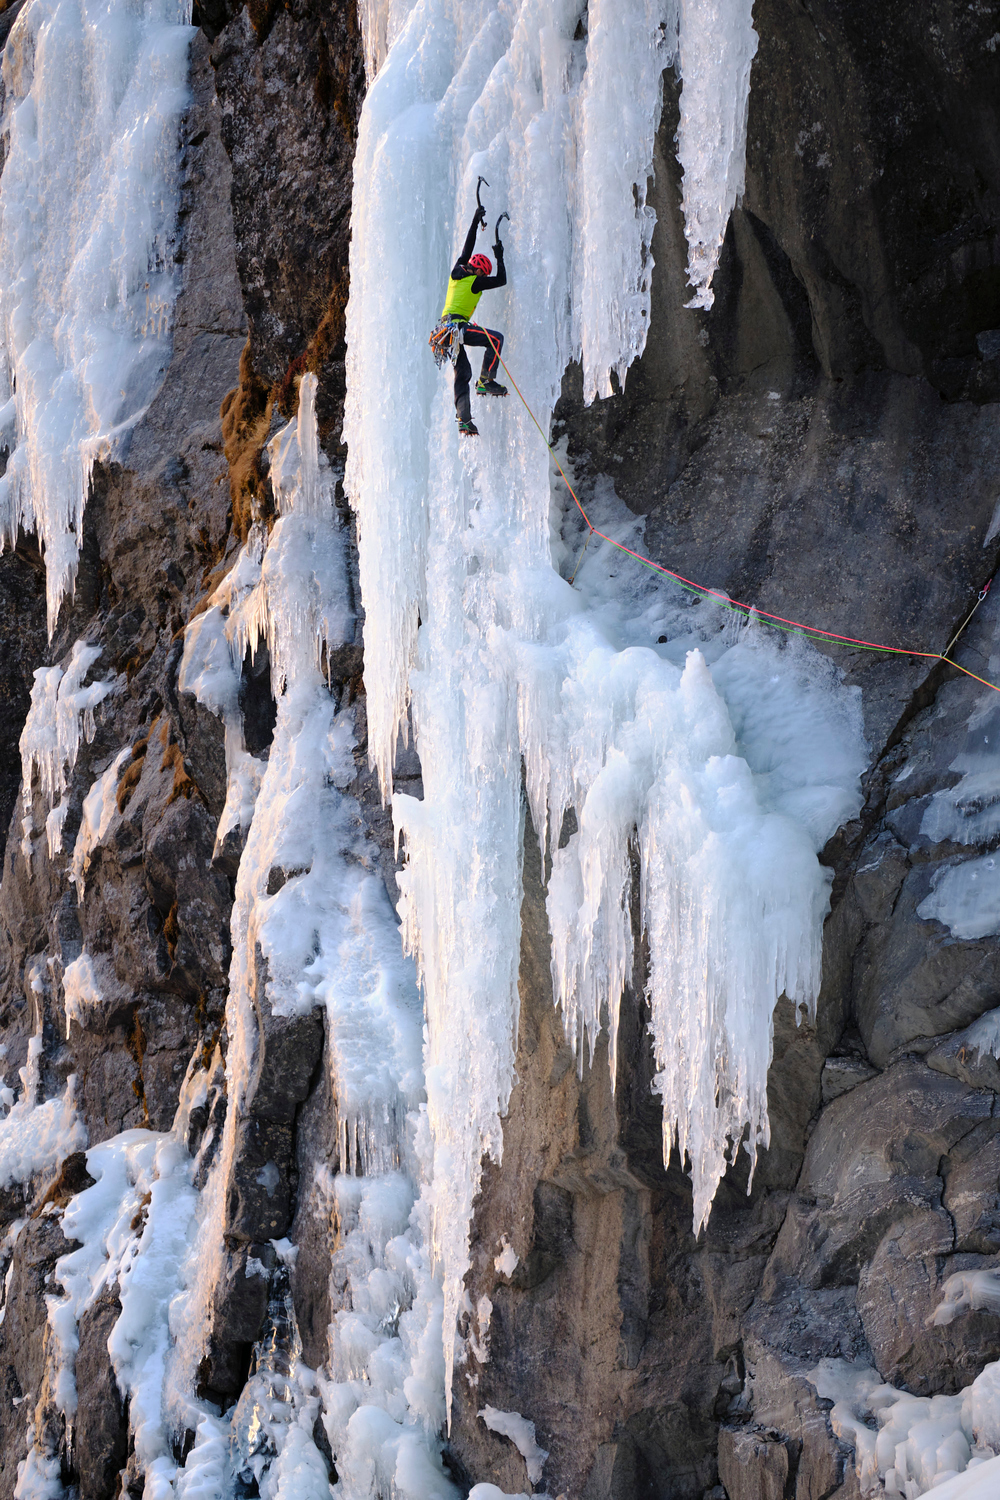 A man ice climbing.